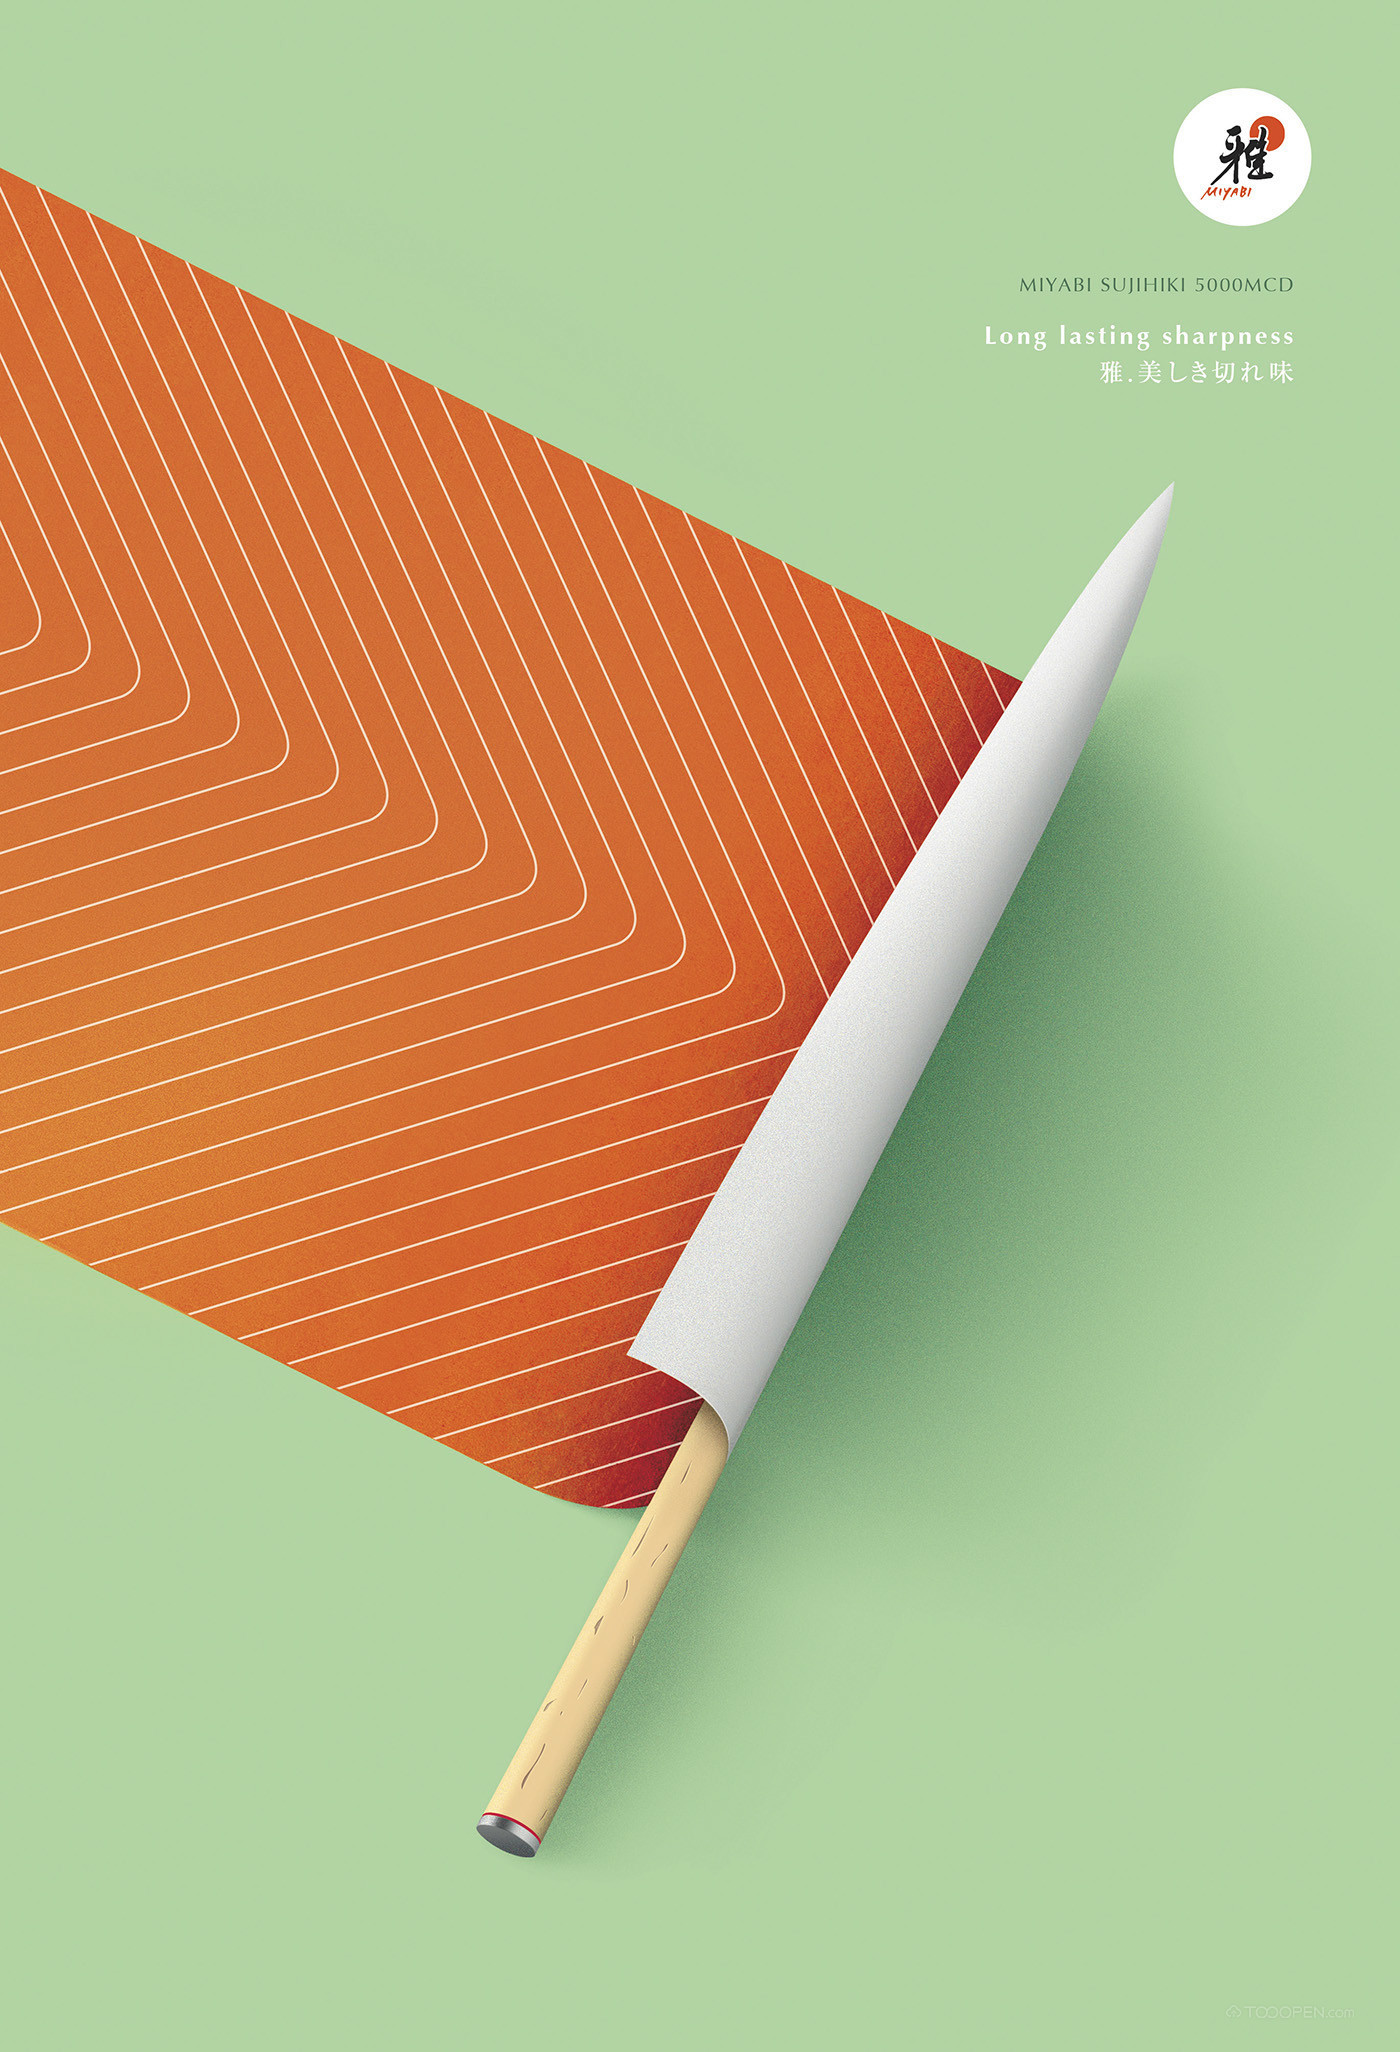 日本miyabi品牌刀具福田繁雄创意海报设计欣赏-05